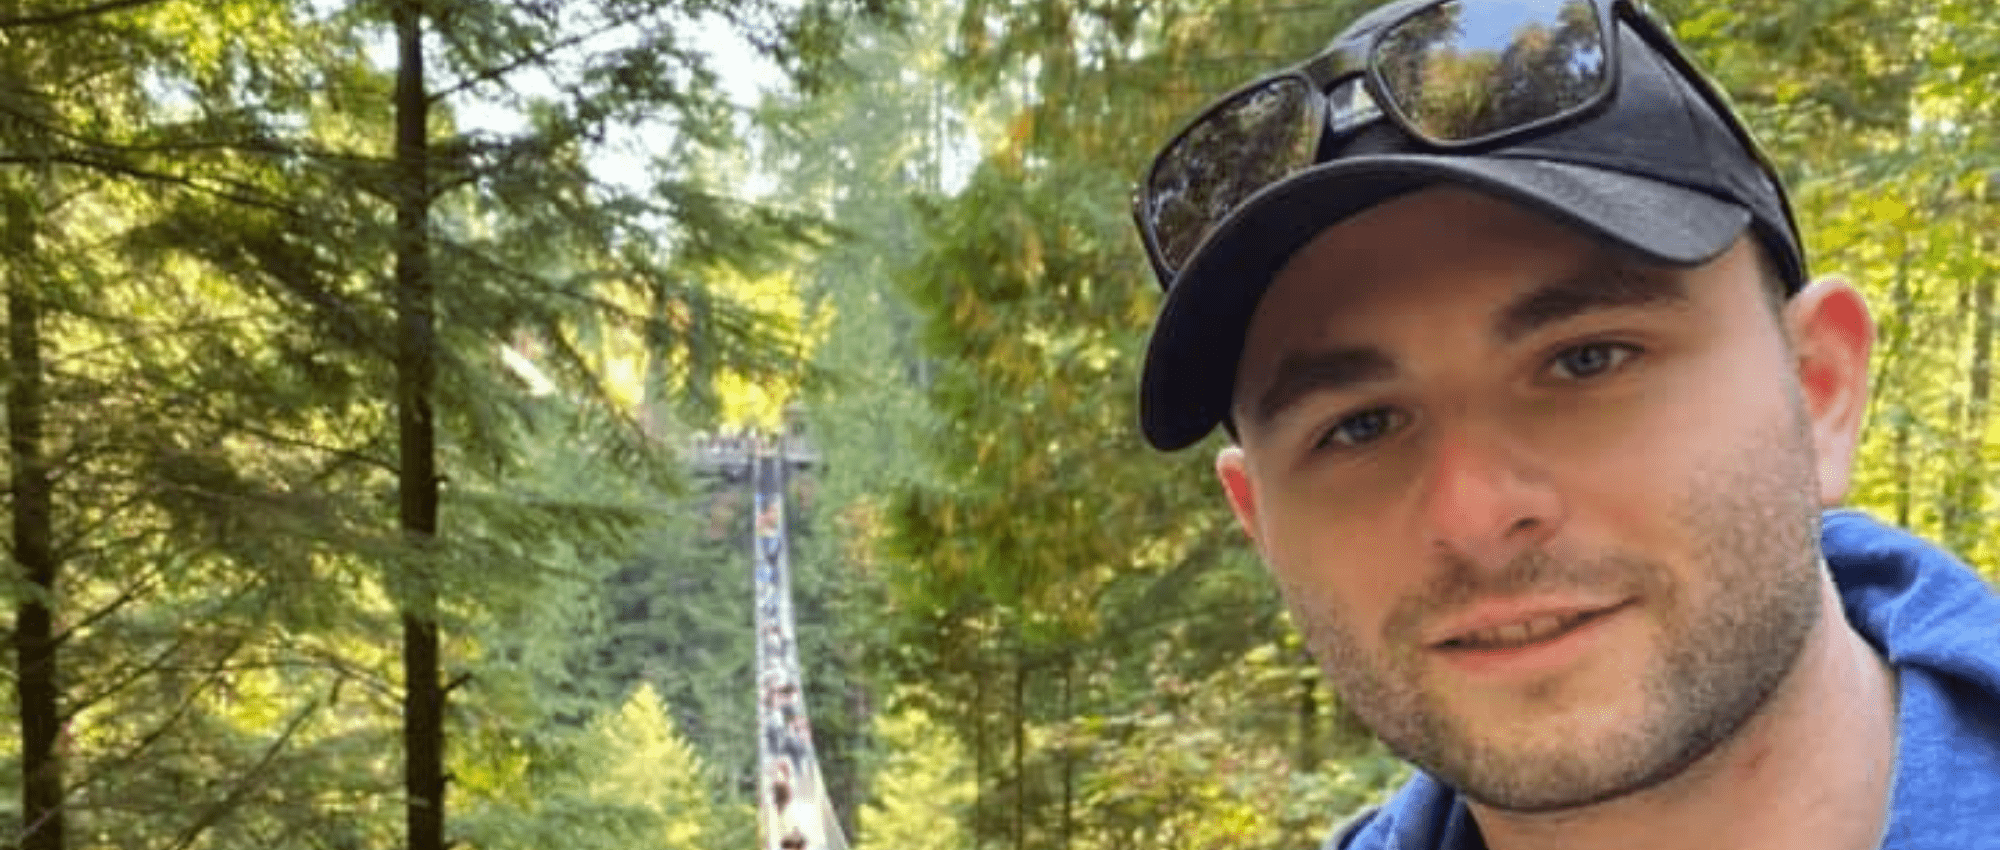 Blood recipient, Ben Becker, on suspension bridge in forest 